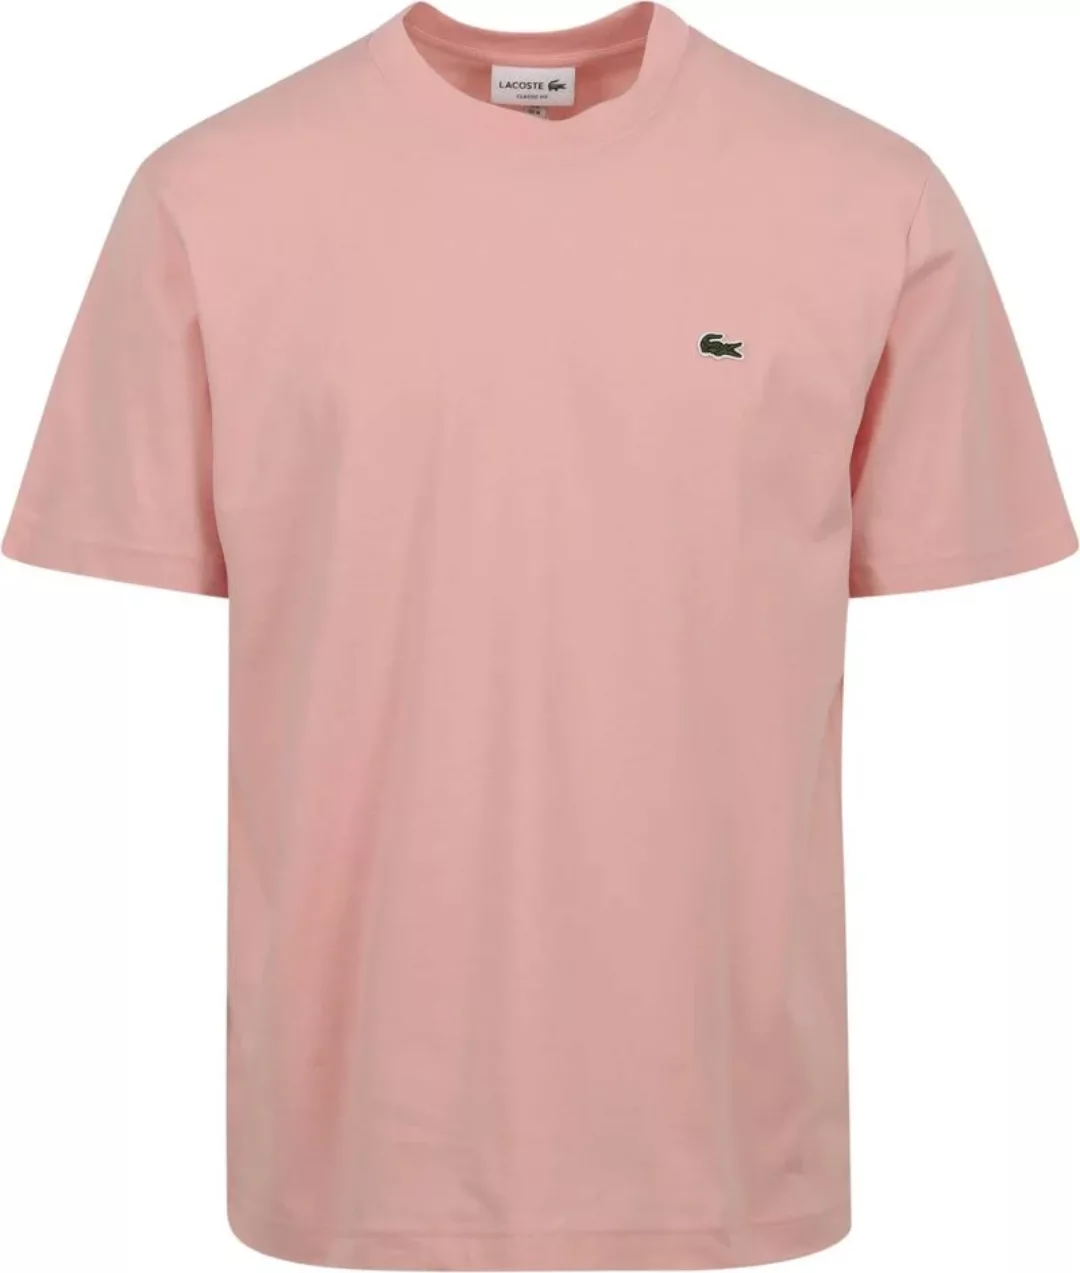 Lacoste T-Shirt Rosa - Größe XL günstig online kaufen